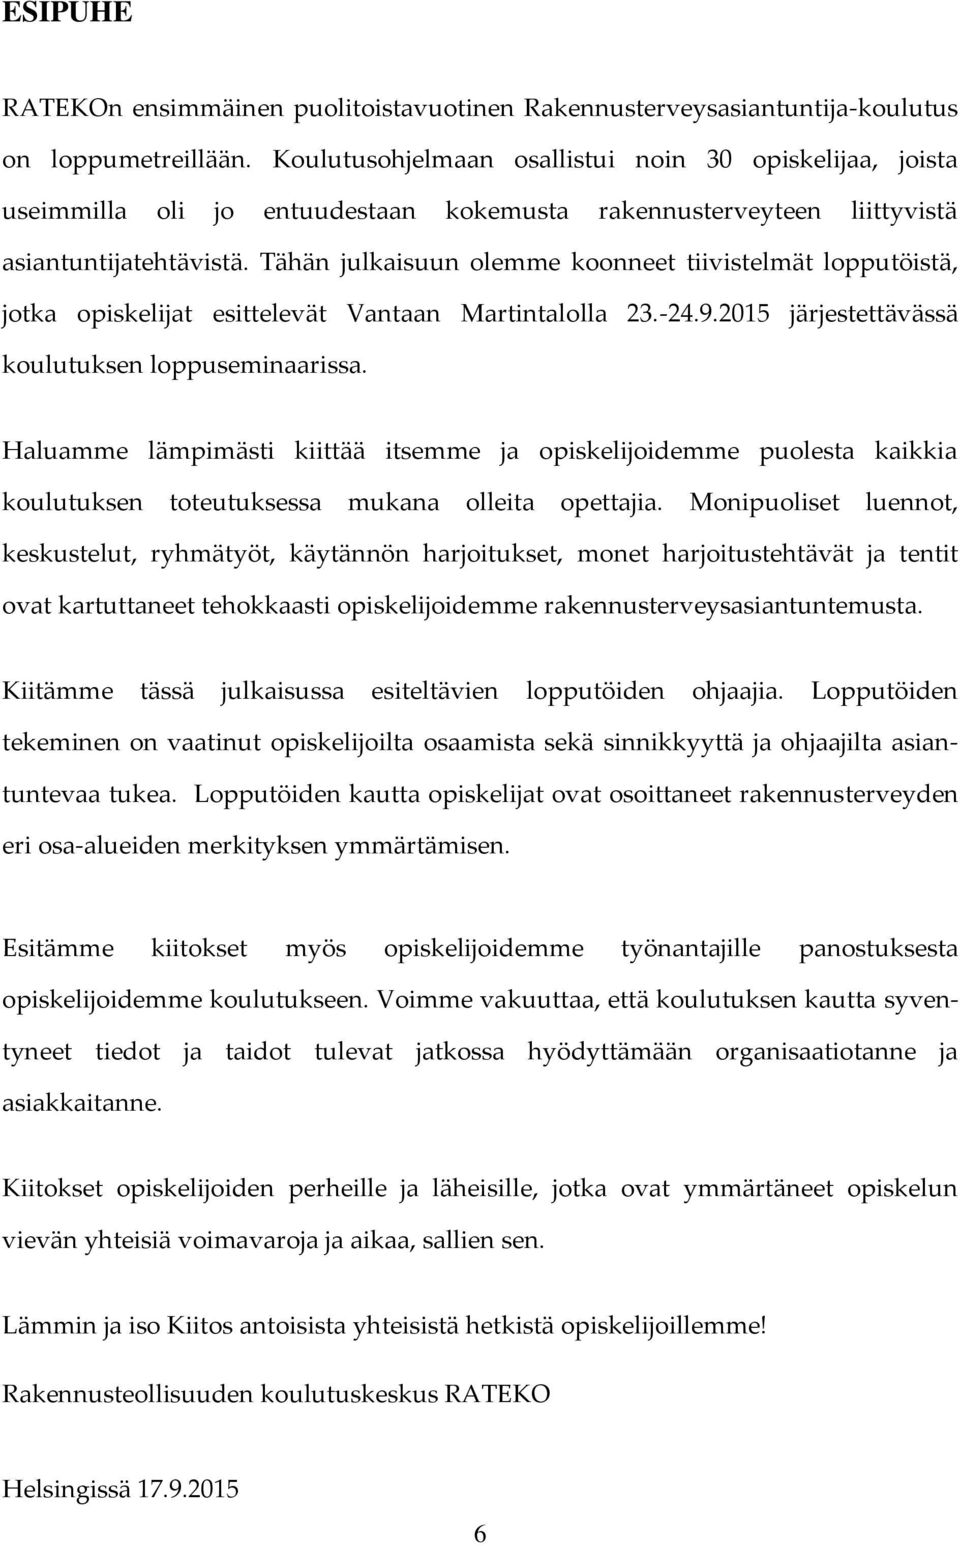 Tähän julkaisuun olemme koonneet tiivistelmät lopputöistä, jotka opiskelijat esittelevät Vantaan Martintalolla 23.-24.9.2015 järjestettävässä koulutuksen loppuseminaarissa.